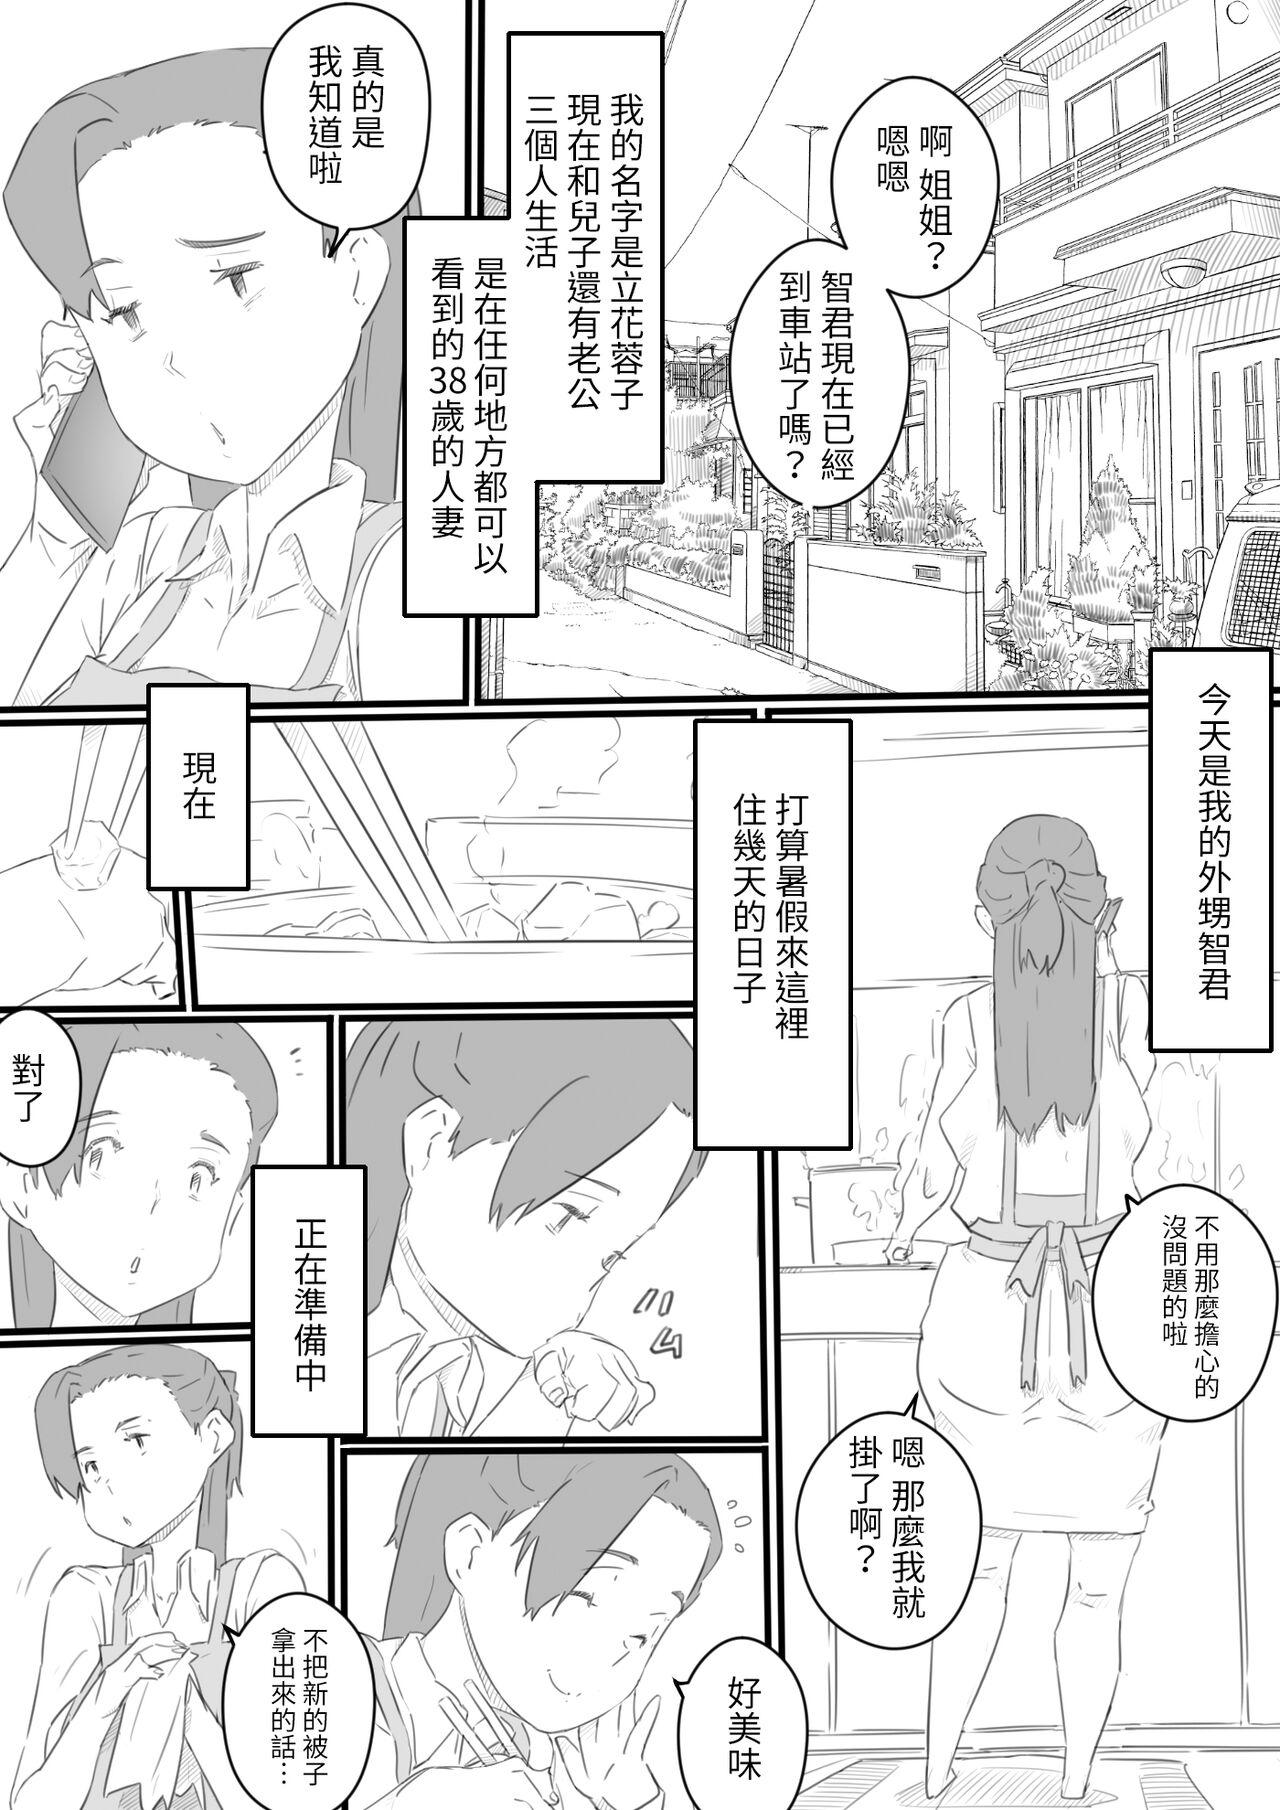 Girl hi ki komo ri no oi xtu ko to三 nin no hitozuma‐ hito natu no omo i de…‐ Best Blowjob - Page 2